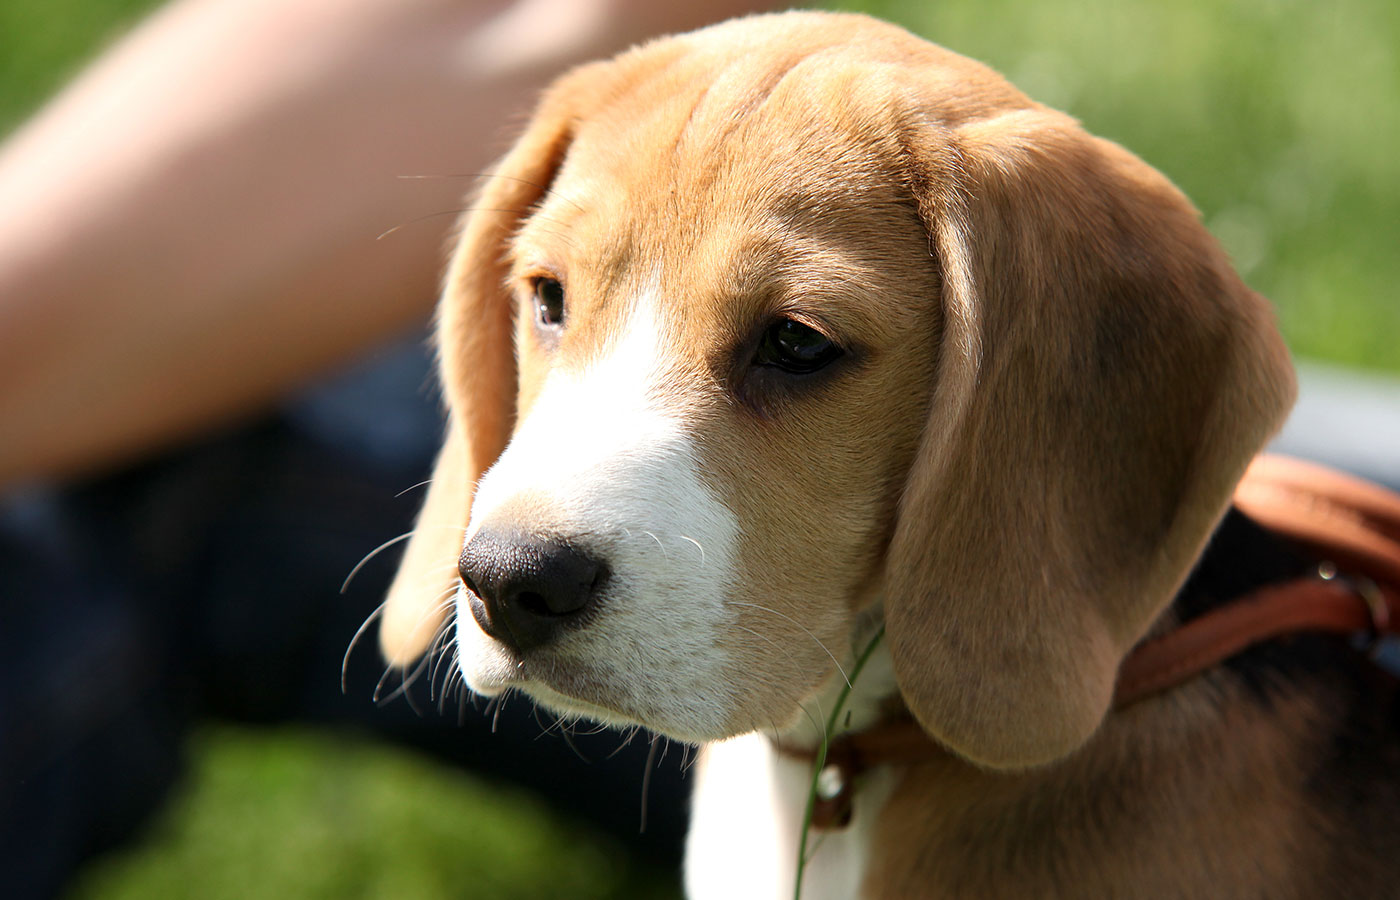 Beagle Puppy portrait - Image